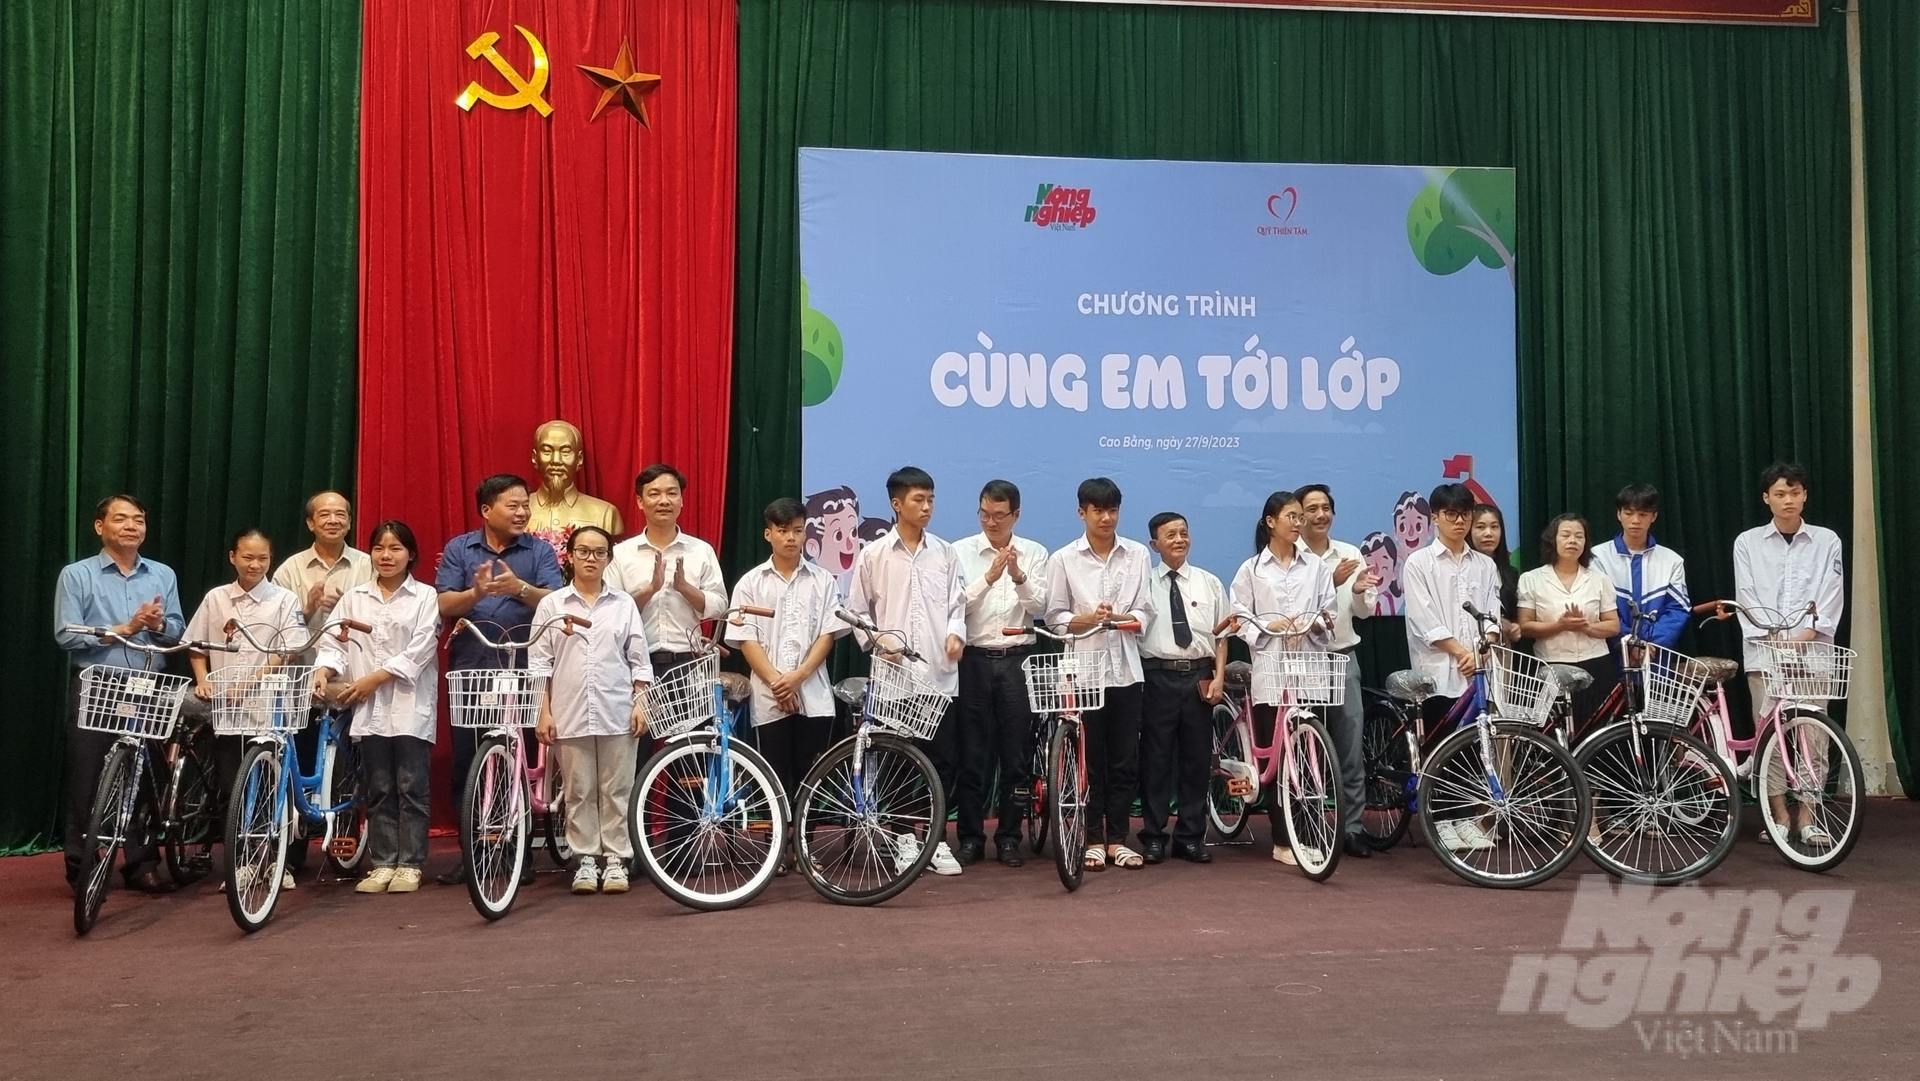 Chương trình Cùng em tới lớp do Báo Nông nghiệp Việt Nam phối hợp với Quỹ Thiện tâm trao 50 xe đạp cho các em học sinh nghèo dân tộc thiểu số tại huyện Thạch An, tỉnh Cao Bằng. Ảnh: Toán Nguyễn.